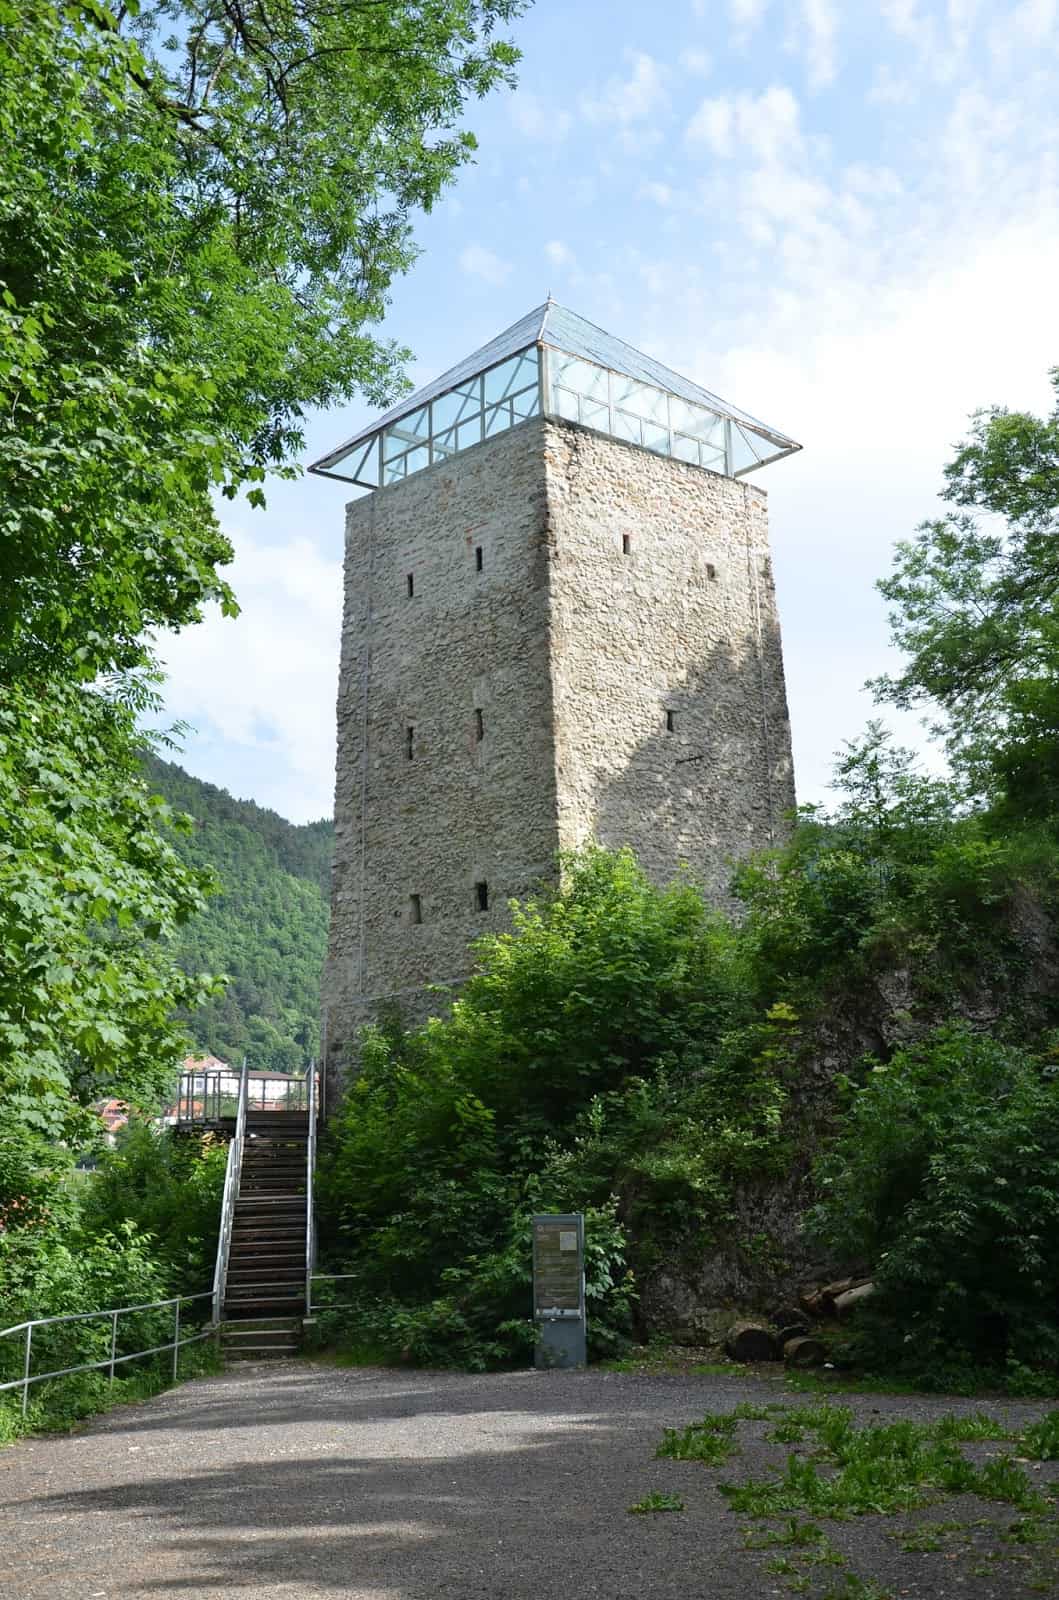 Black Tower in Braşov, Romania